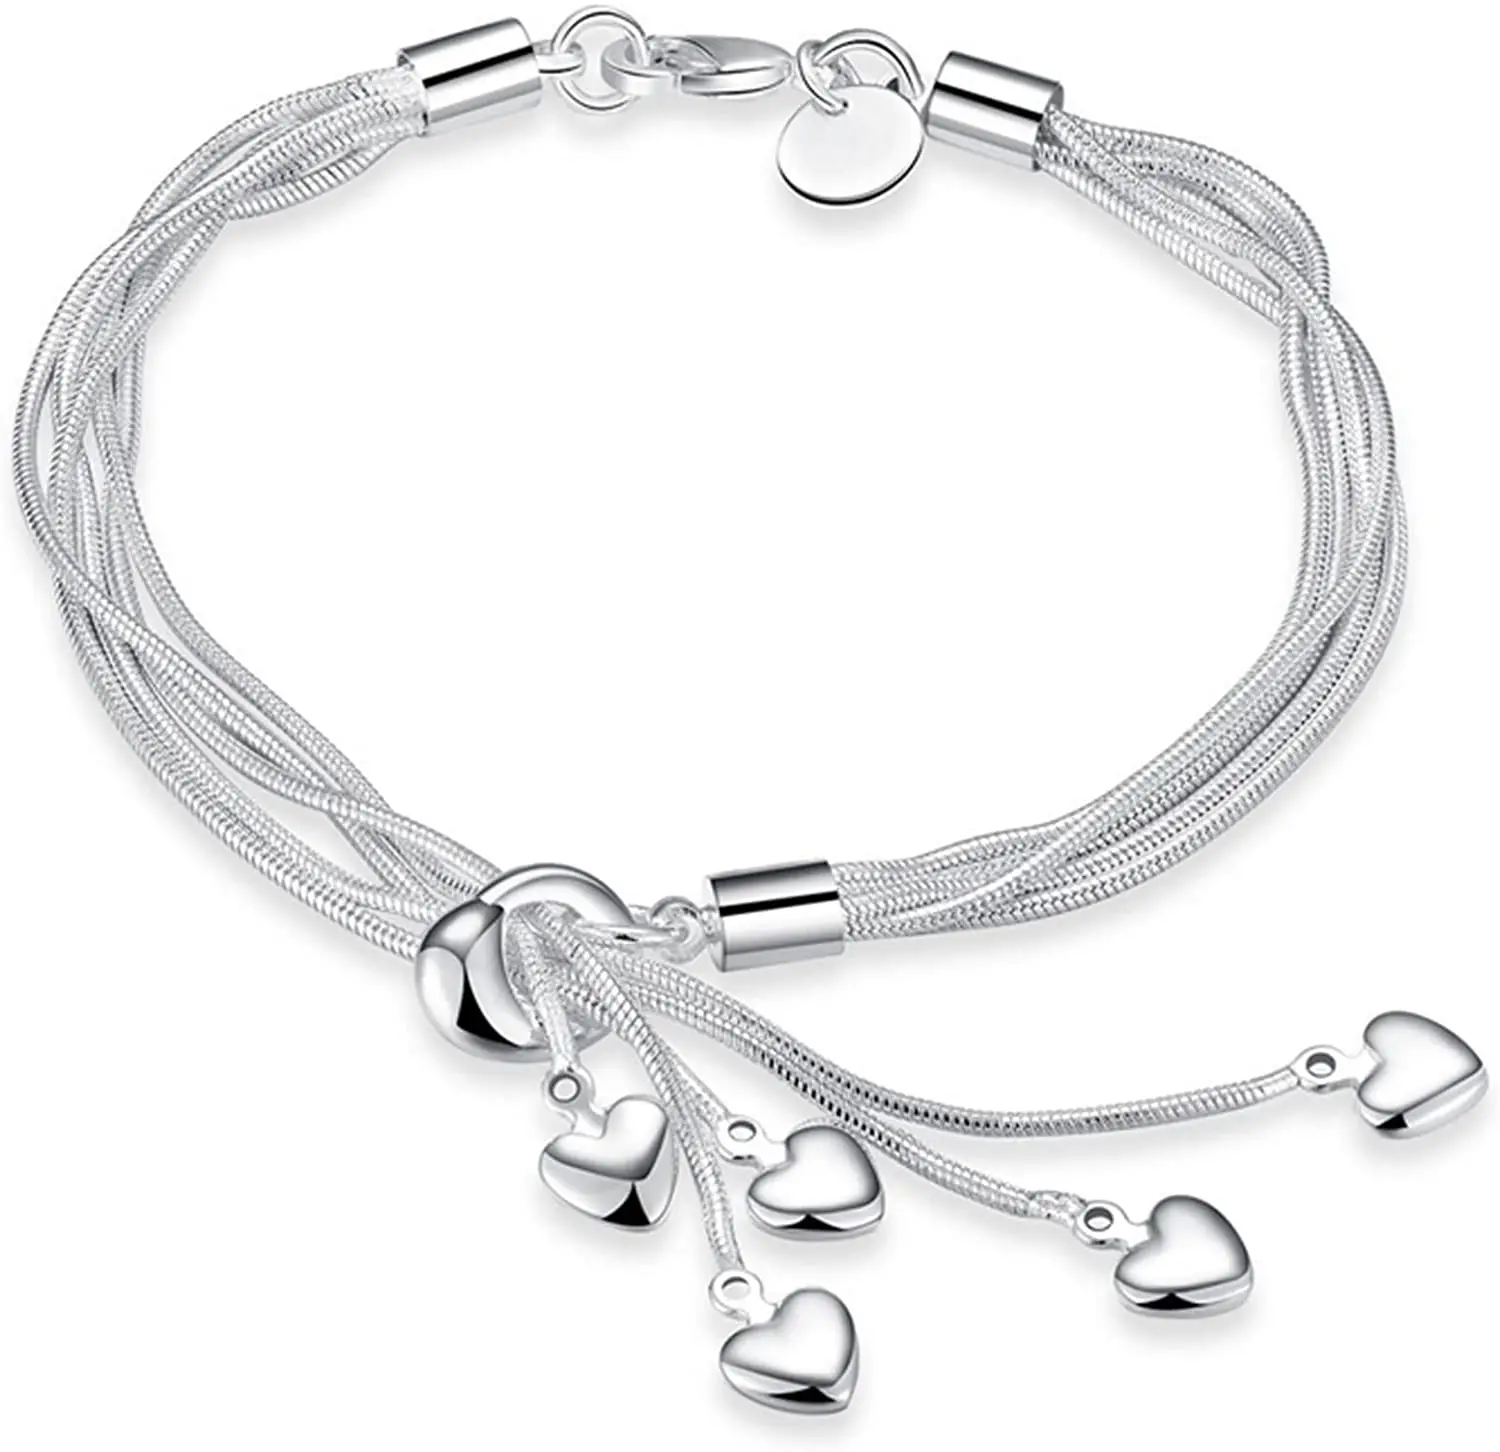 Bracelet For Women Friendship Bracelets Charm Bracelets Chain Bracelet Love Personalised Adjustable Hand Chain Sister Gift